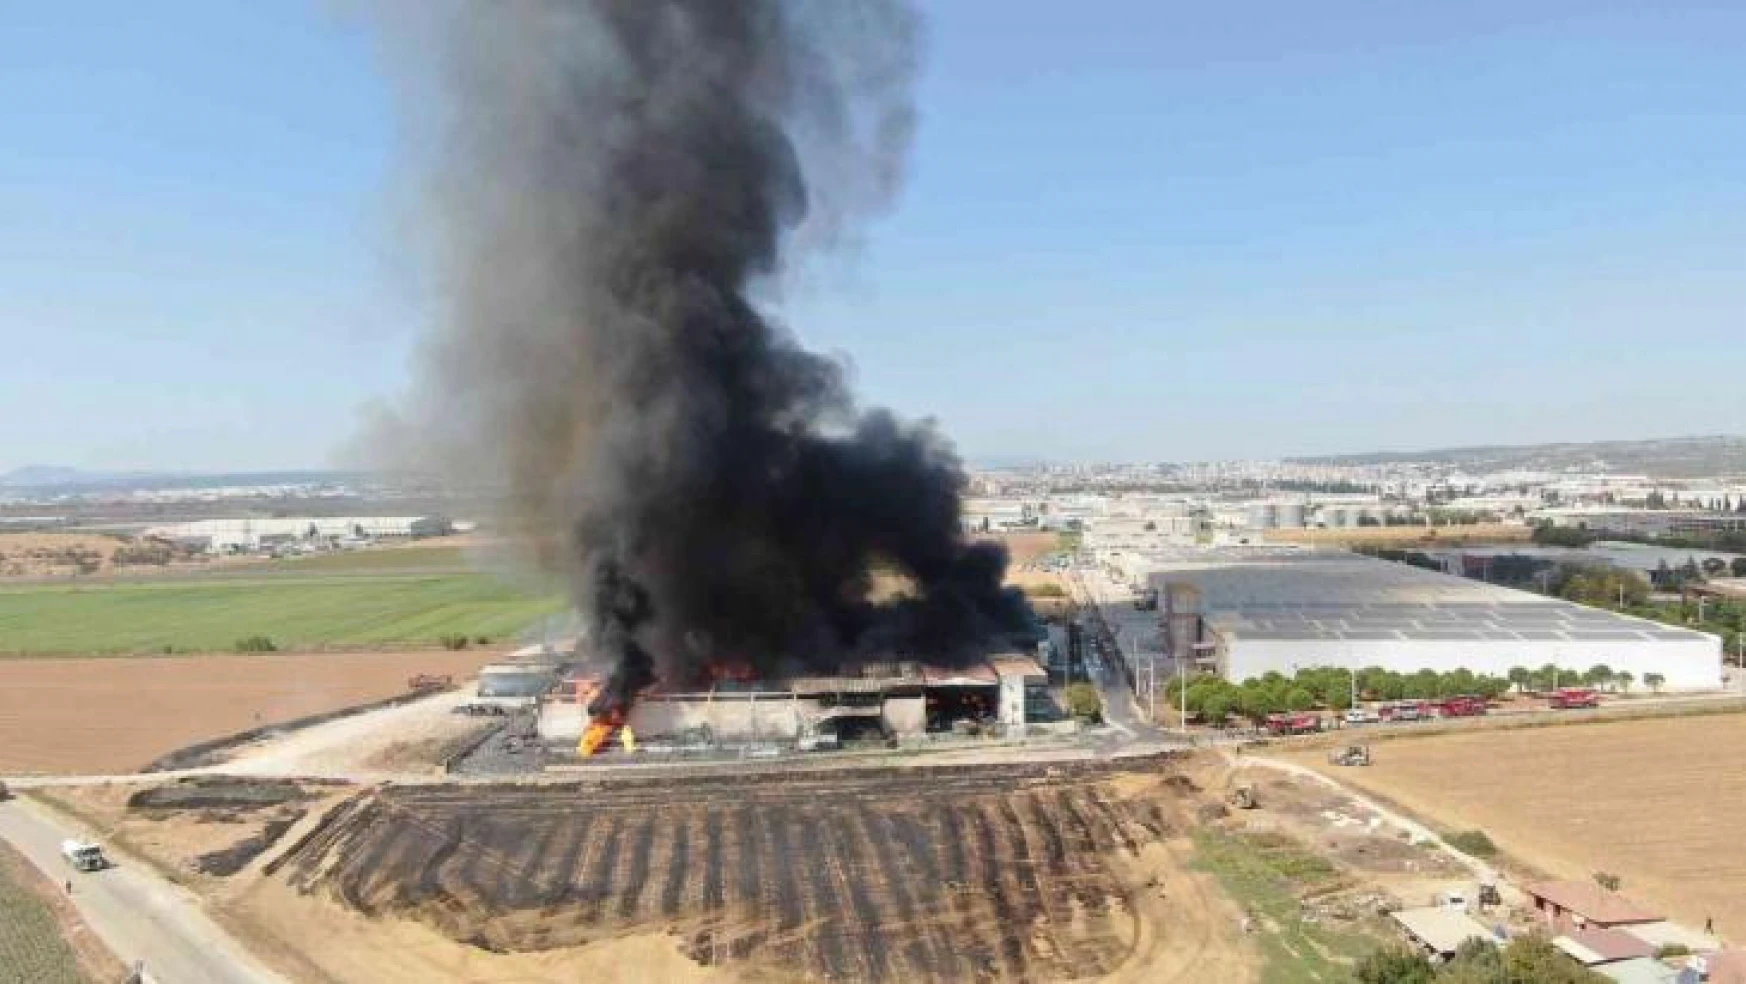 İzmir'in Torbalı ilçesinde bulunan bir fabrikada yangın çıktı. Yangına çok sayıda itfaiye sevk edildi.